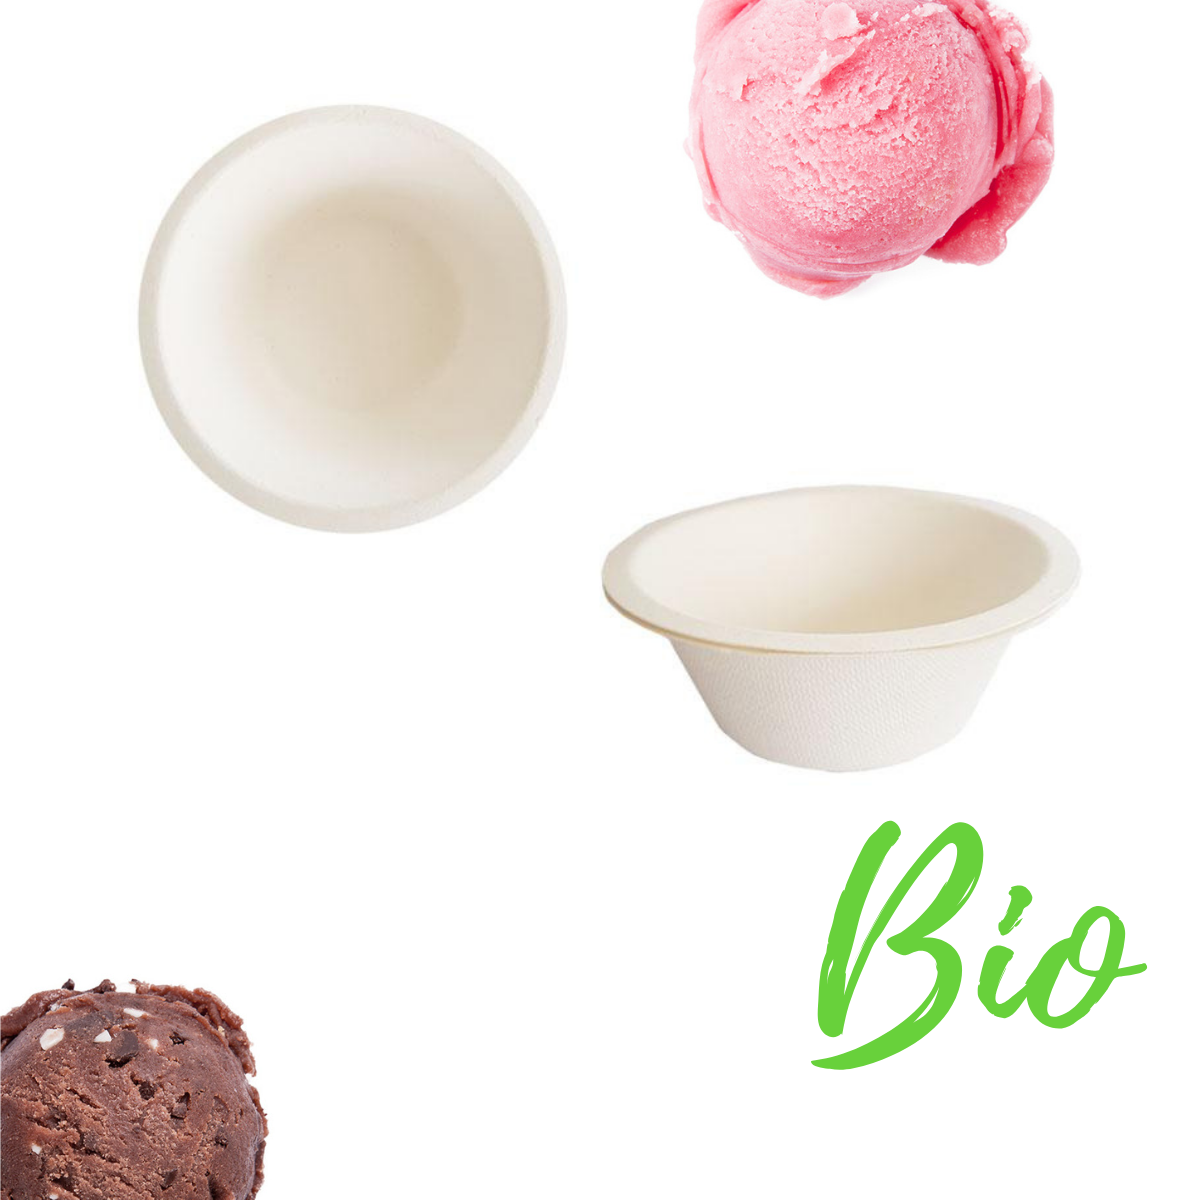 50 pz Coppette gelato biodegradabili € 0,073 Cad + Iva